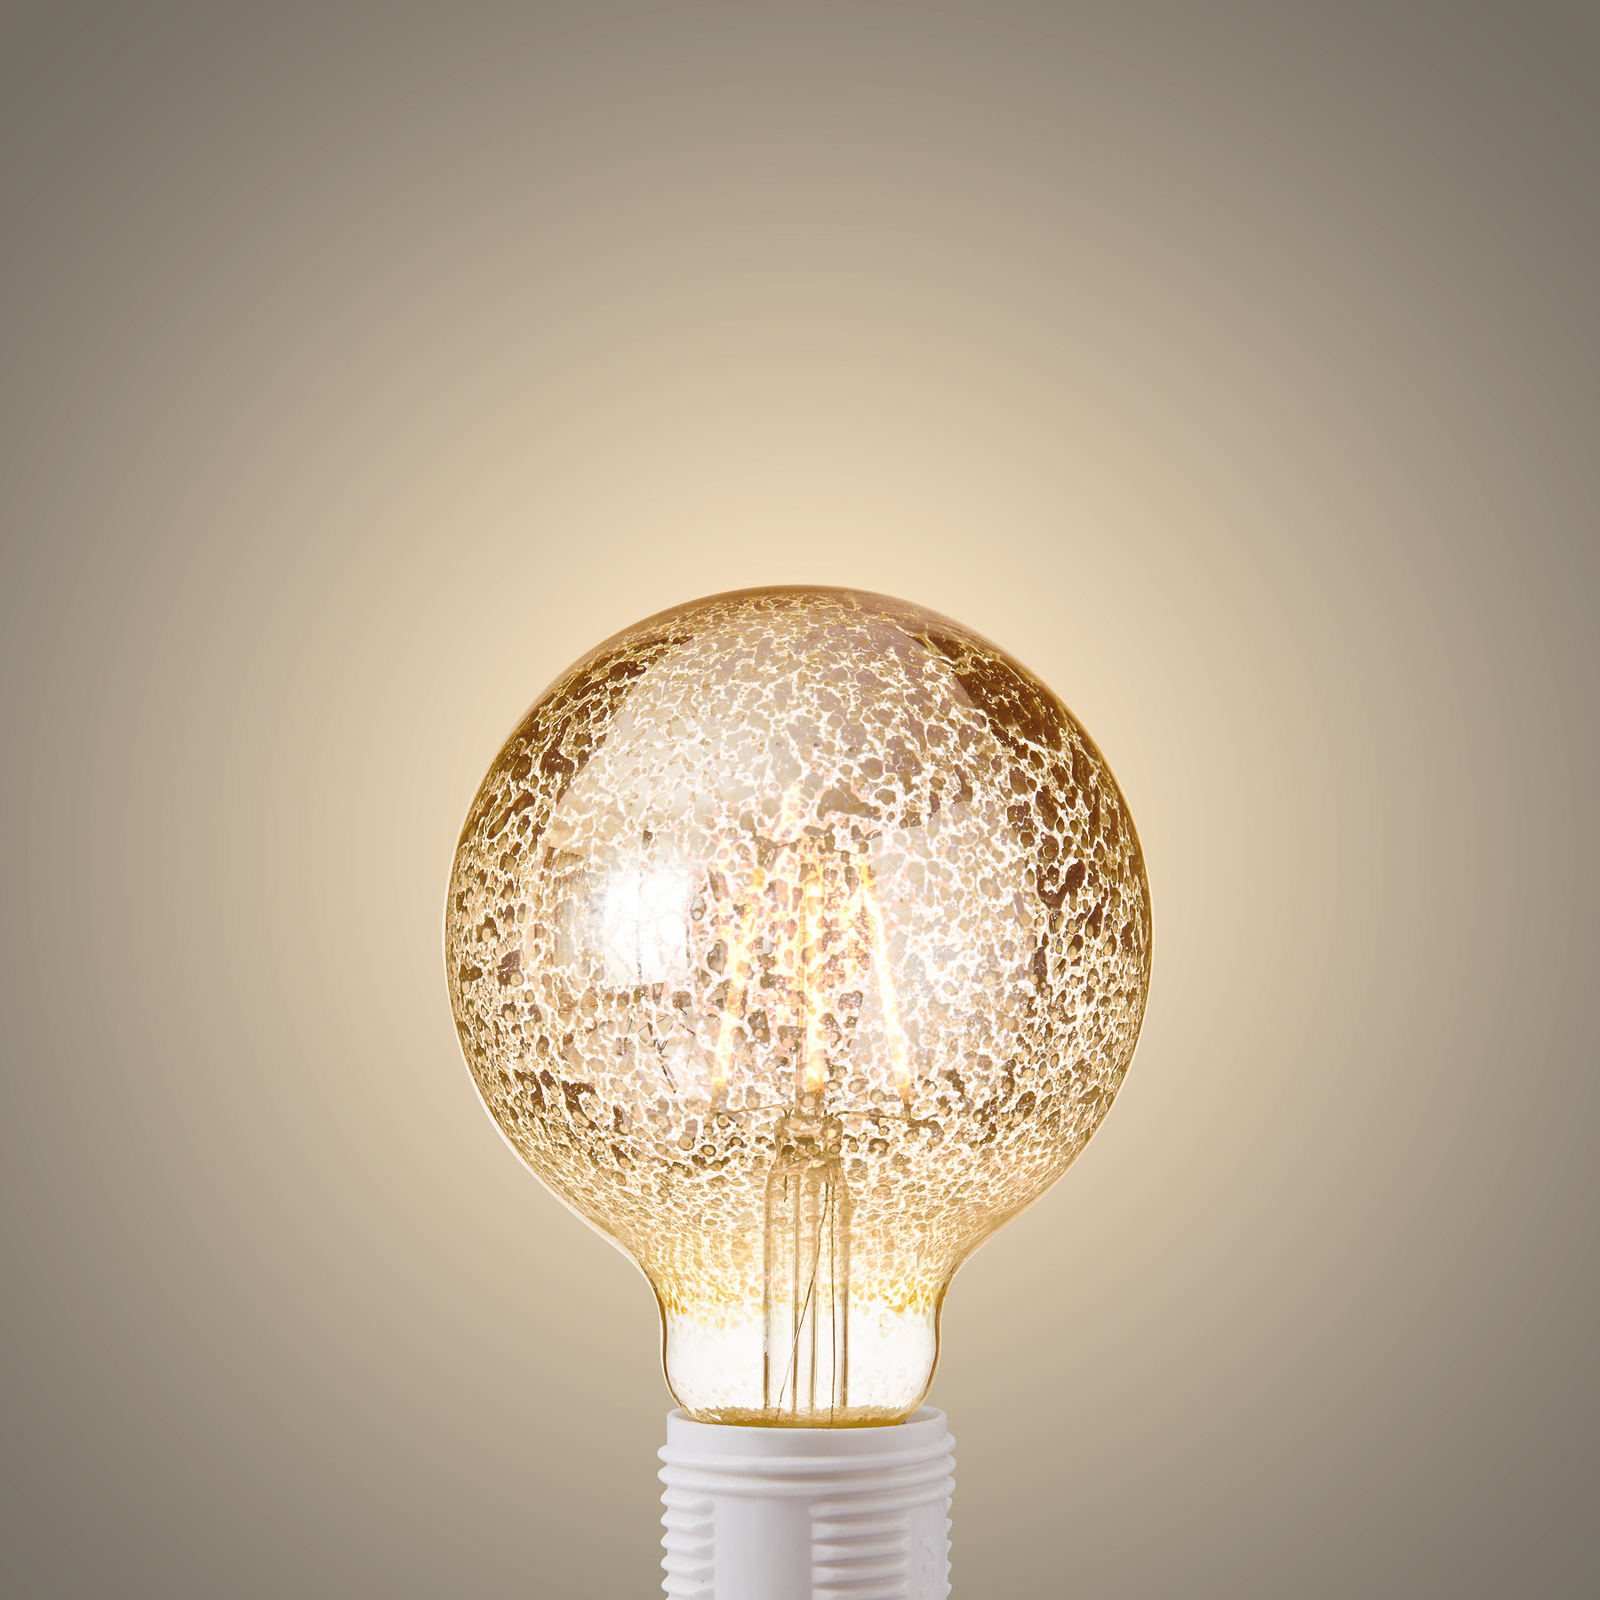 Lucande LED bulb E27 Ø 9.5 cm 4 W 1,800 K confetti